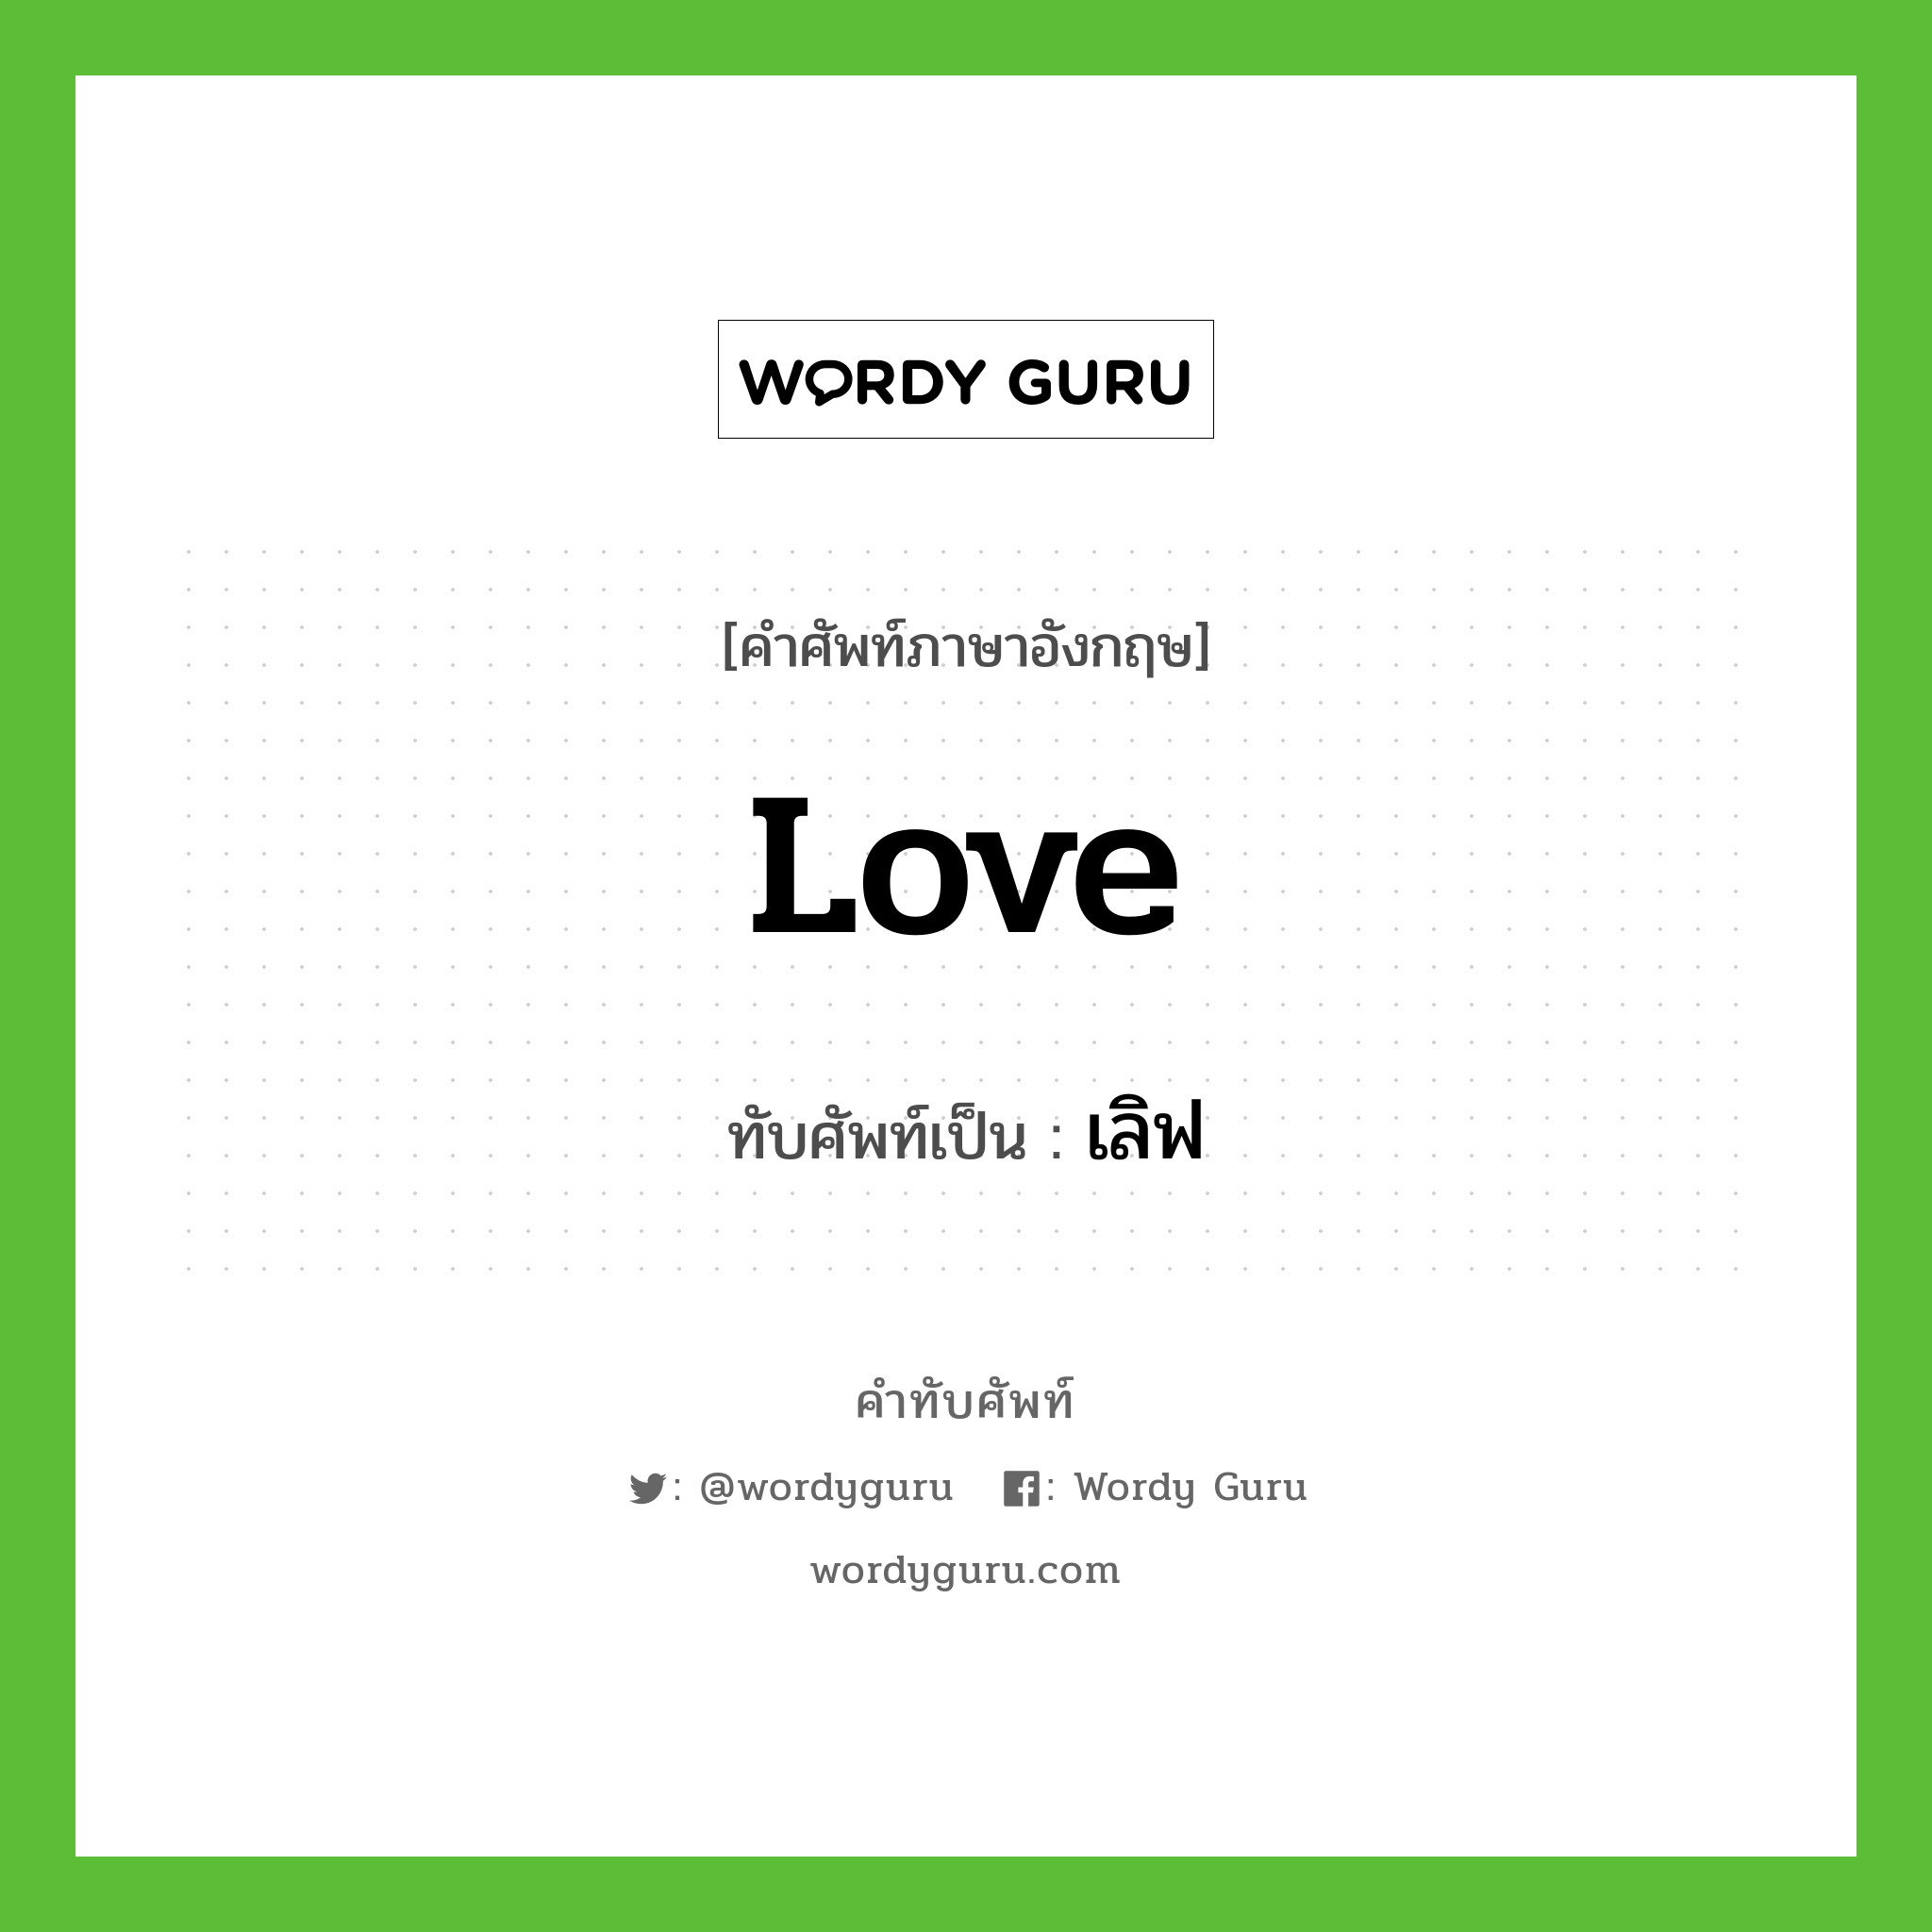 Love เขียนเป็นคำไทยว่าอะไร?, คำศัพท์ภาษาอังกฤษ Love ทับศัพท์เป็น เลิฟ